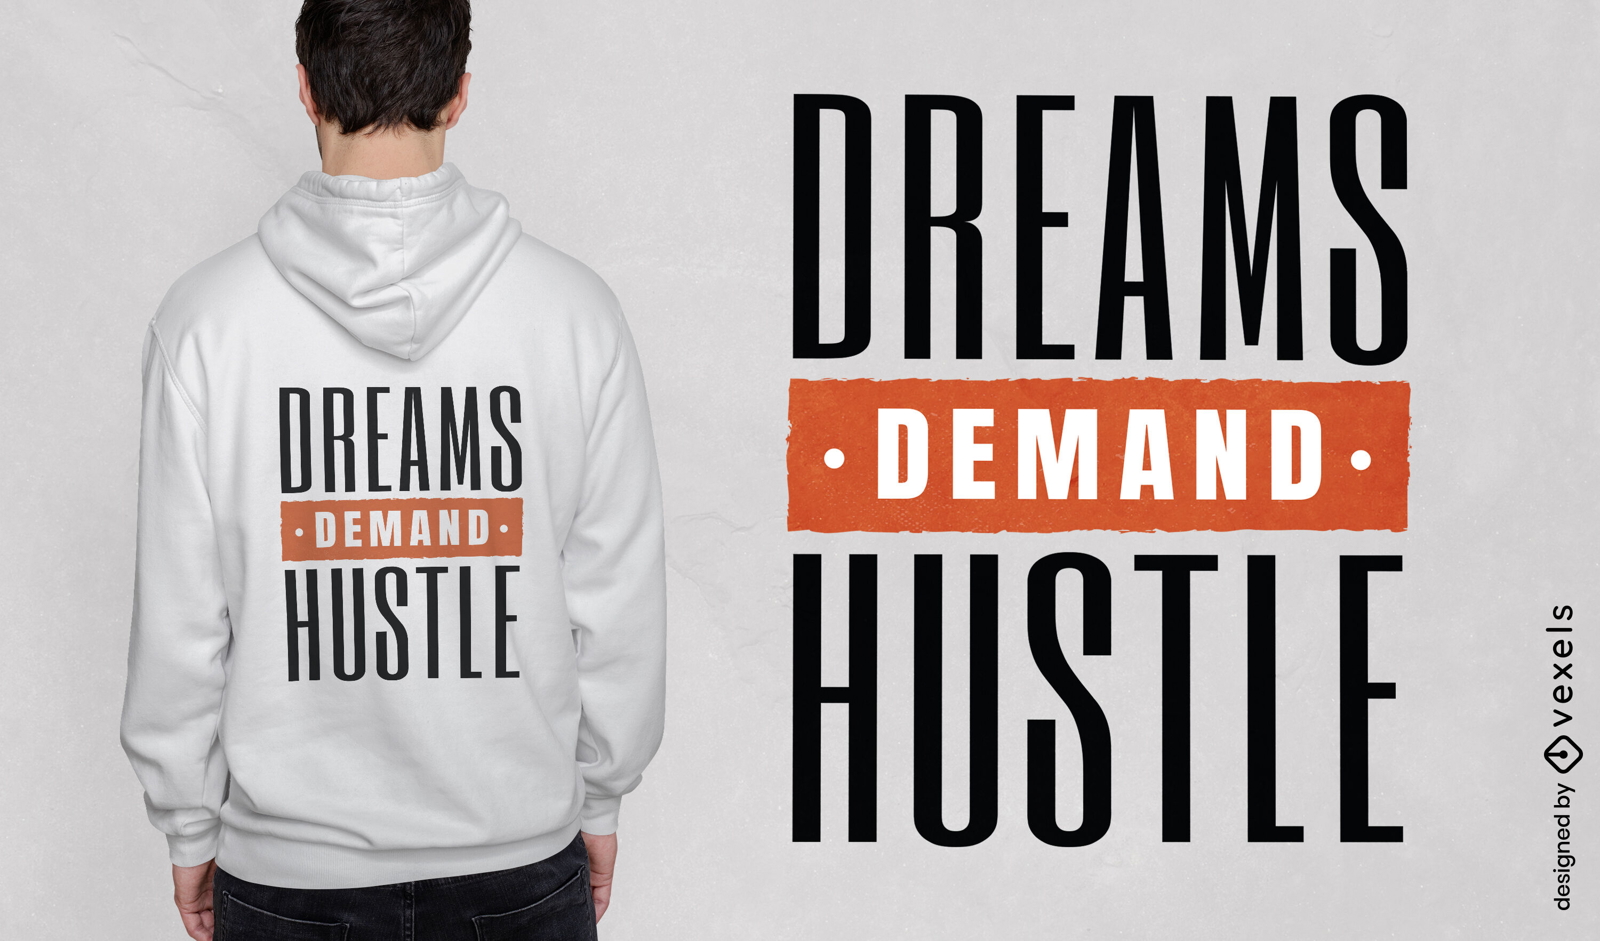 Os sonhos agitam o design de camiseta com cita??o motivacional